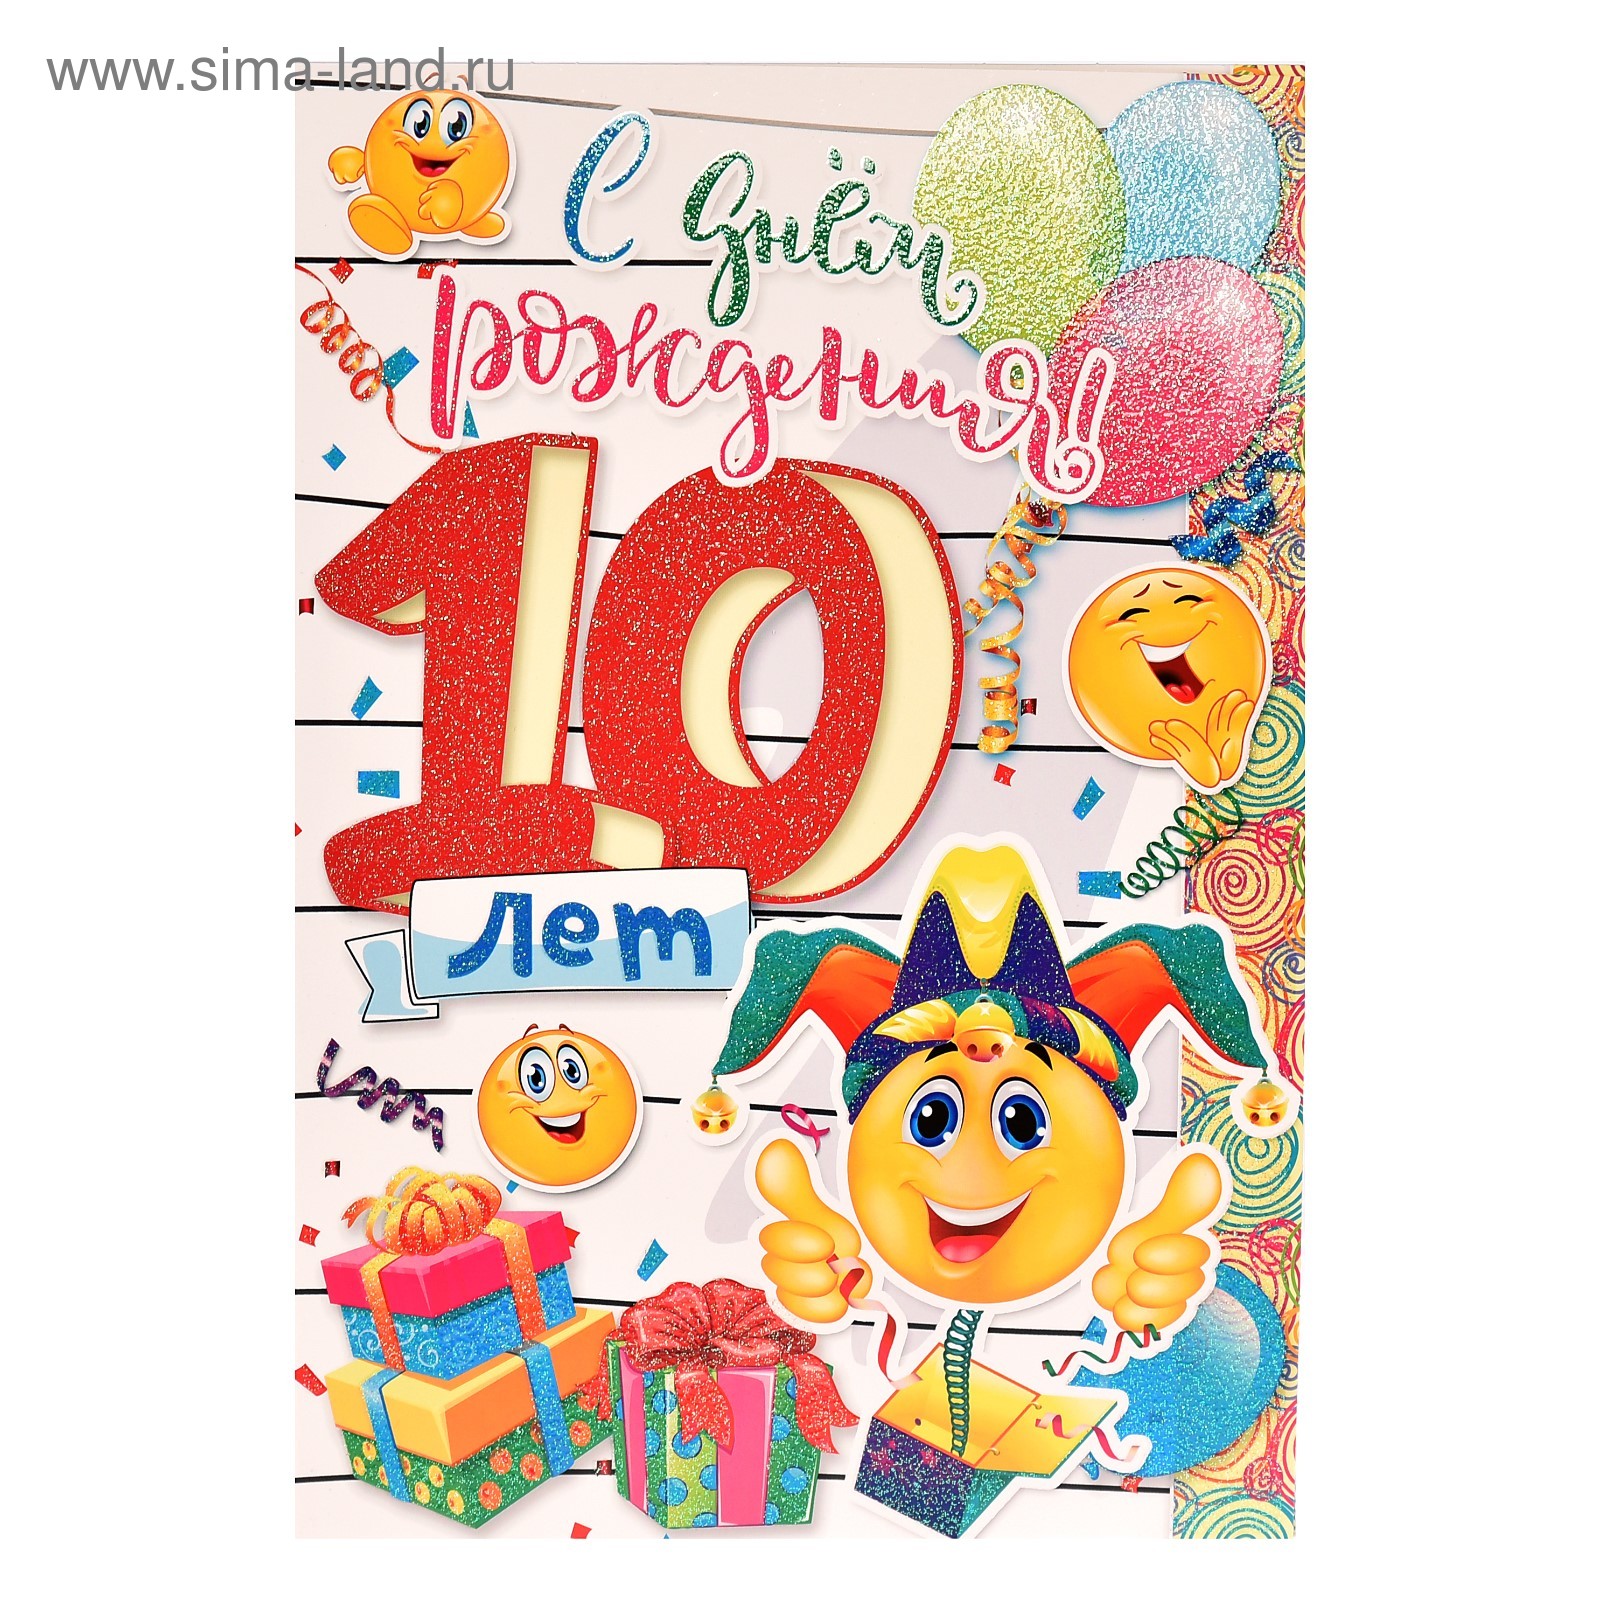 Поздравление днем рождения мальчику 10 лет открытки. С днем рождения 10 лет. Открытка 10 лет. С днемироддения / 10 лет. Открытки с днём рождения 10 лет.